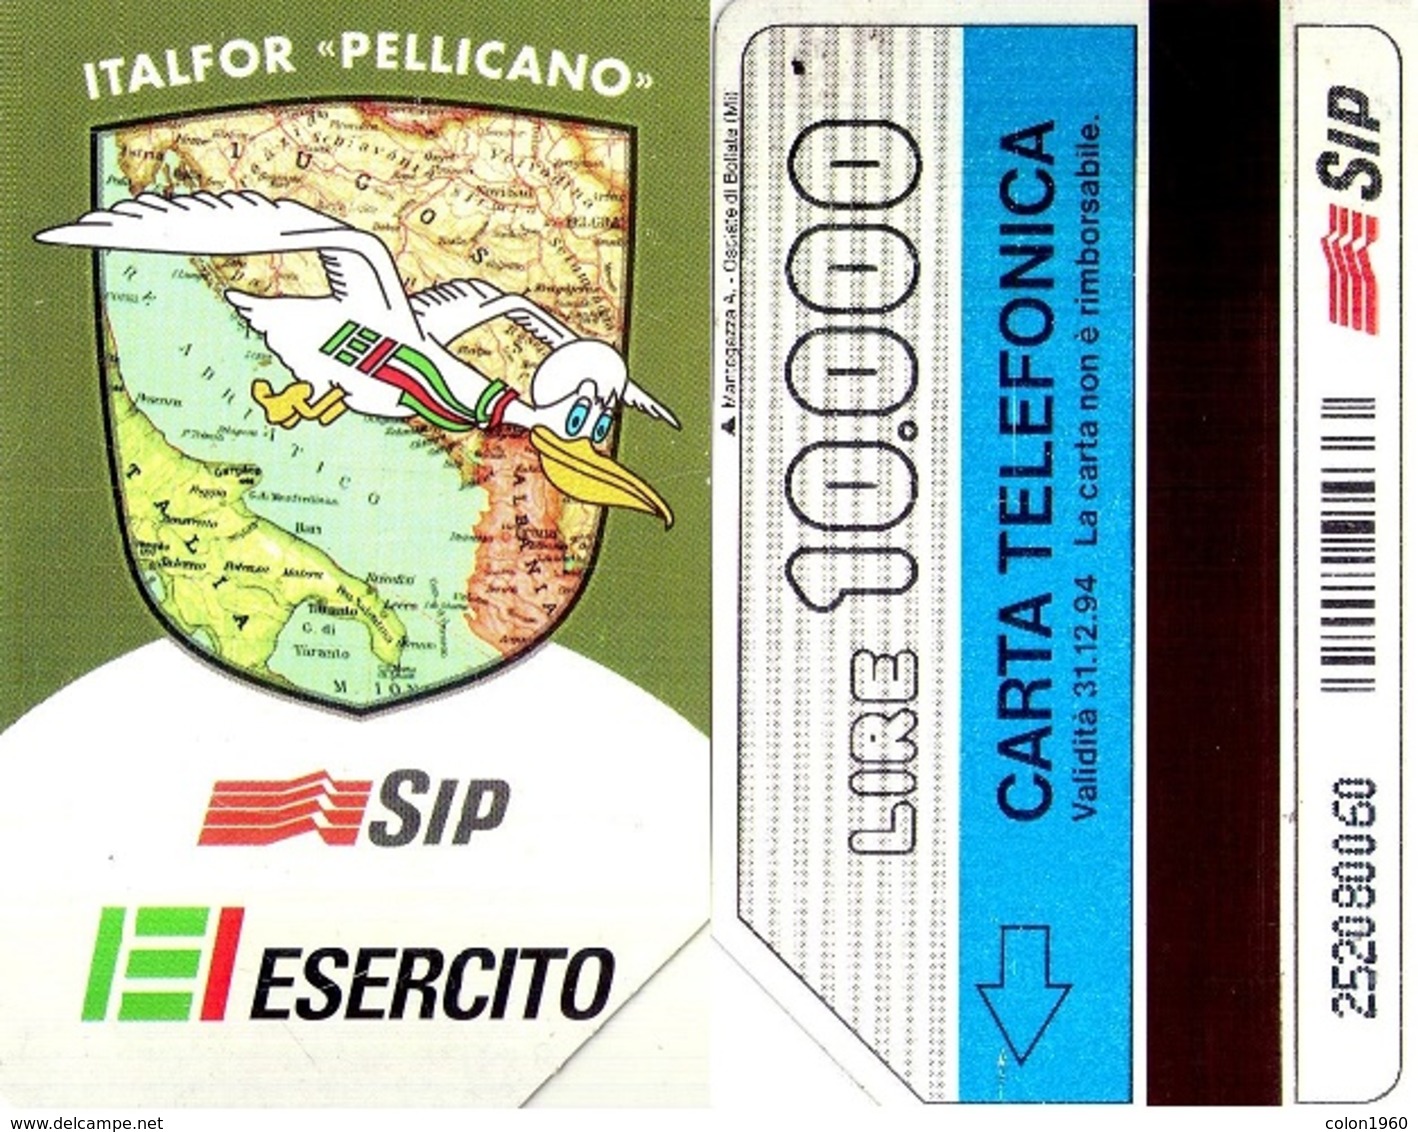 TARJETA TELEFONICA DE ITALIA. ITALFOR "PELLICANO", EJERCITO, 31-12-94. 10000L. 2290. (123) - Armada